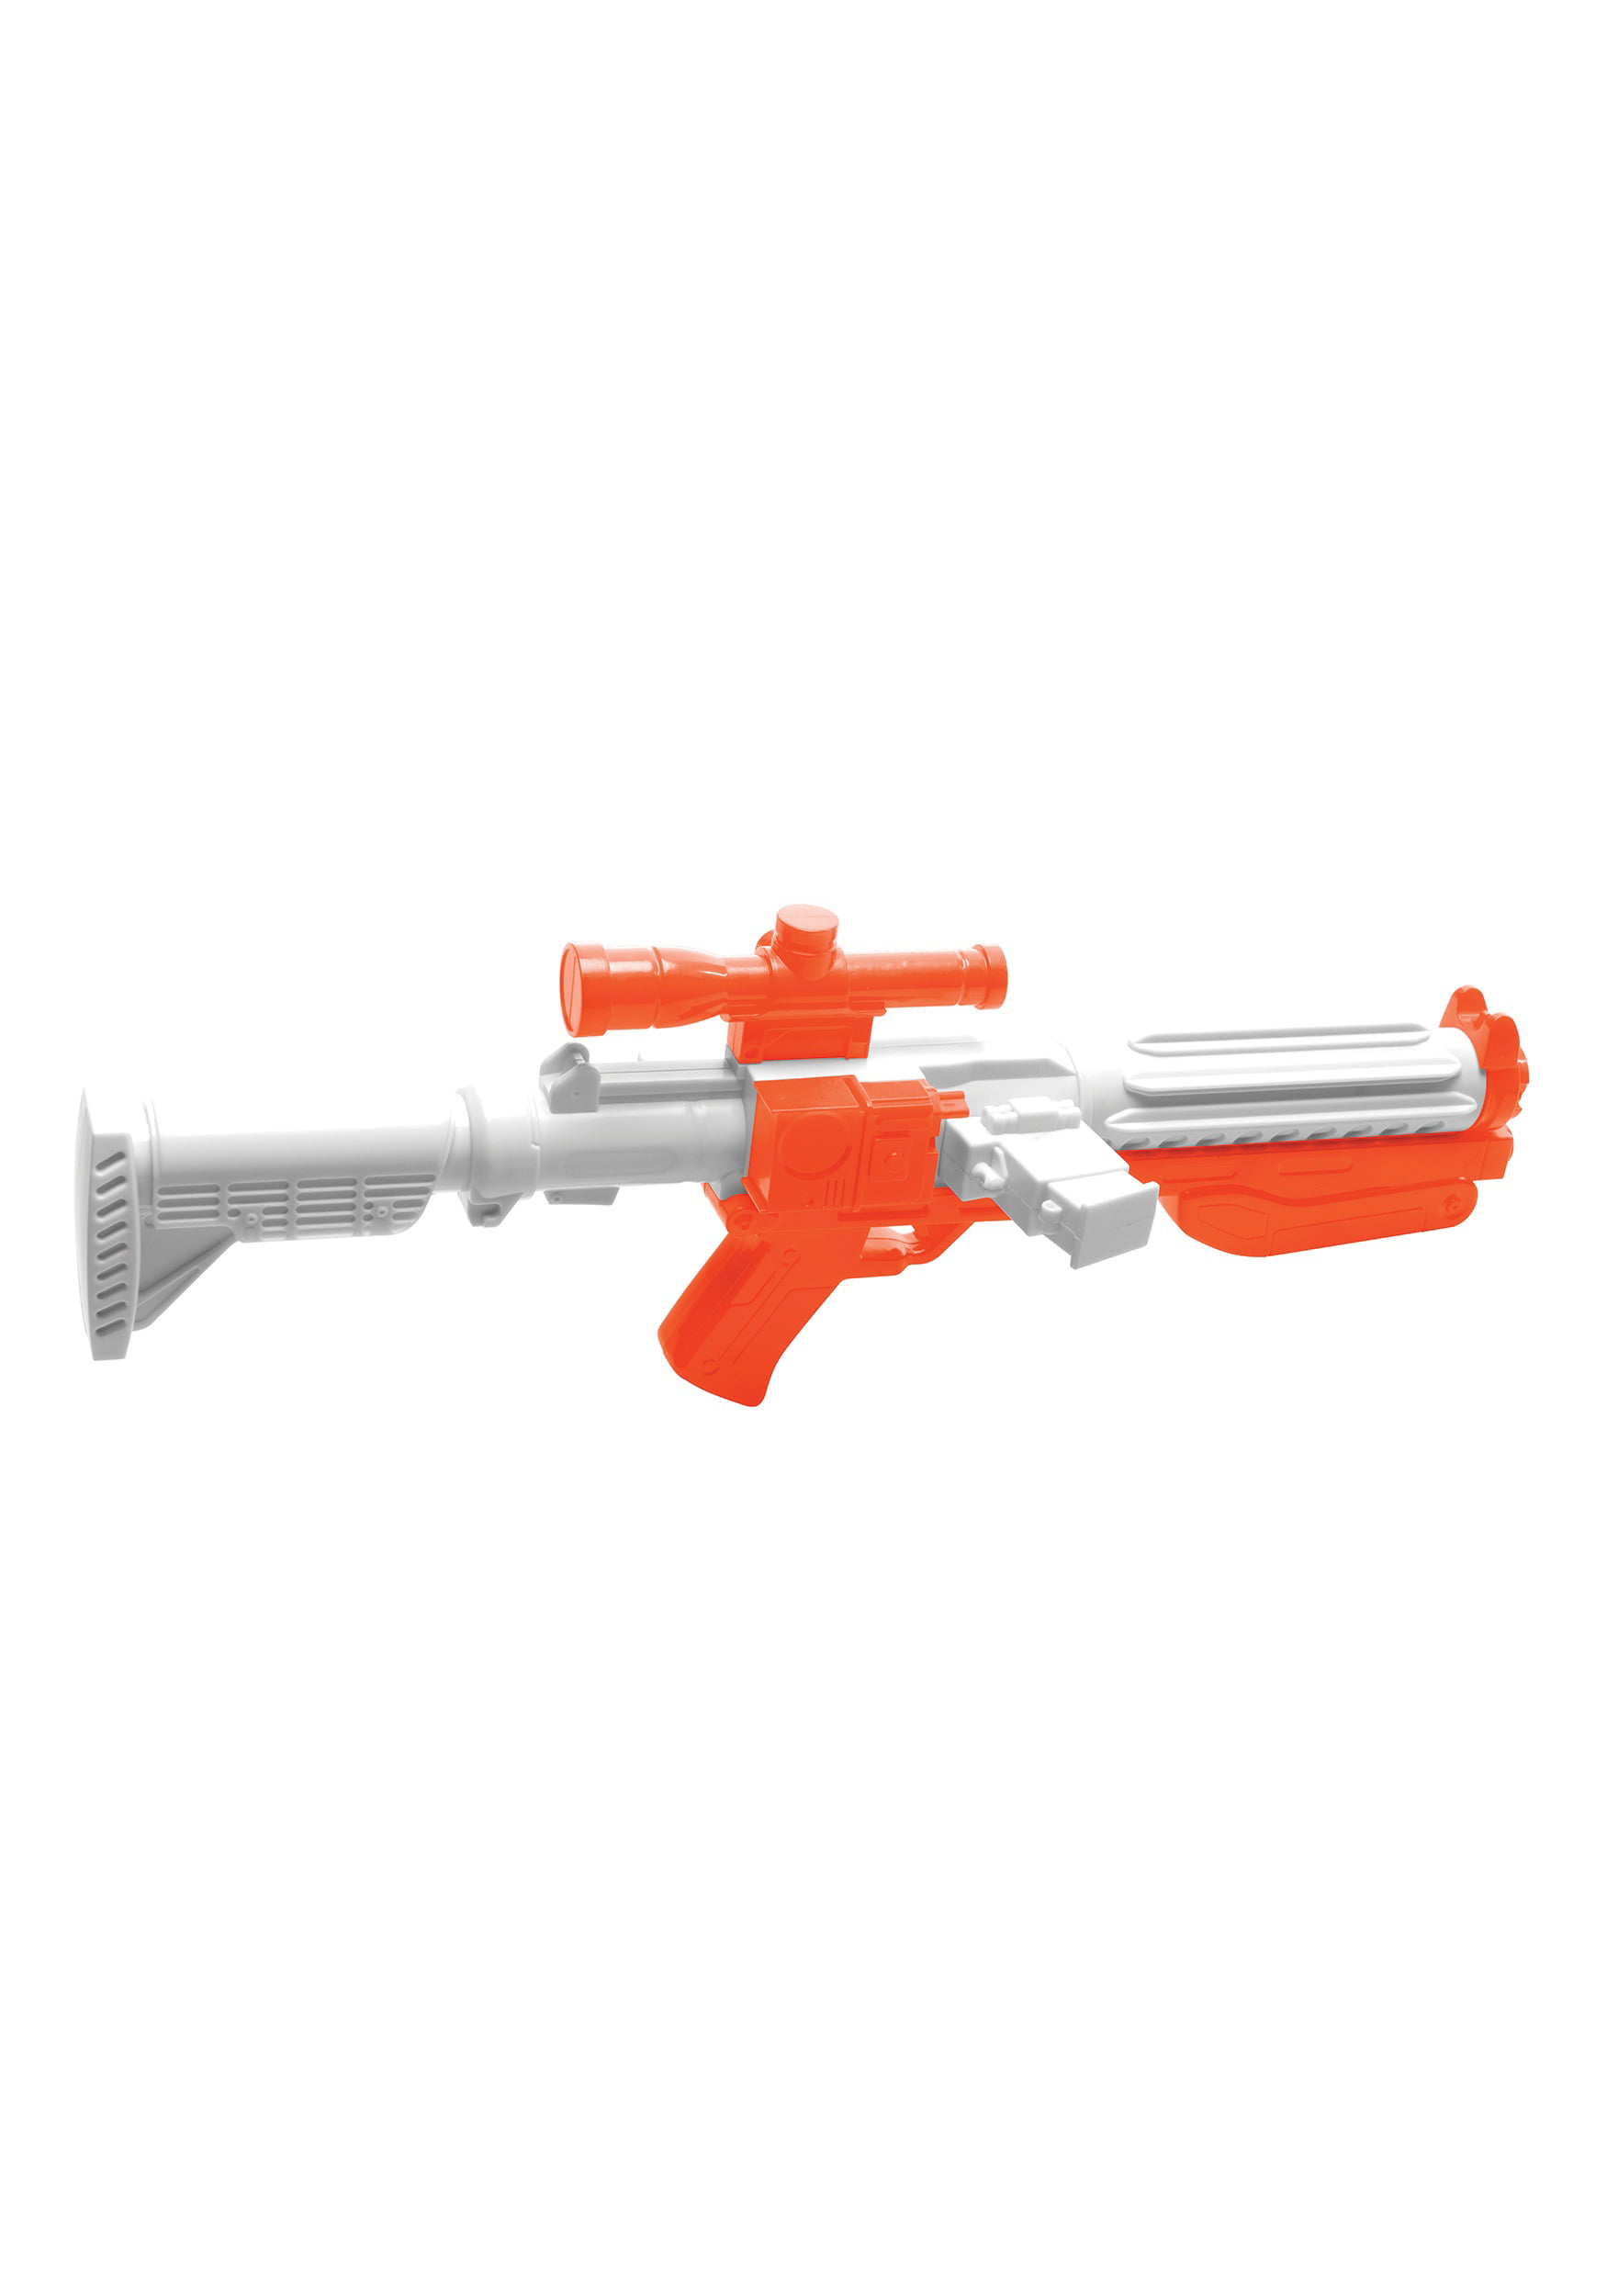 star wars blaster toy with sound